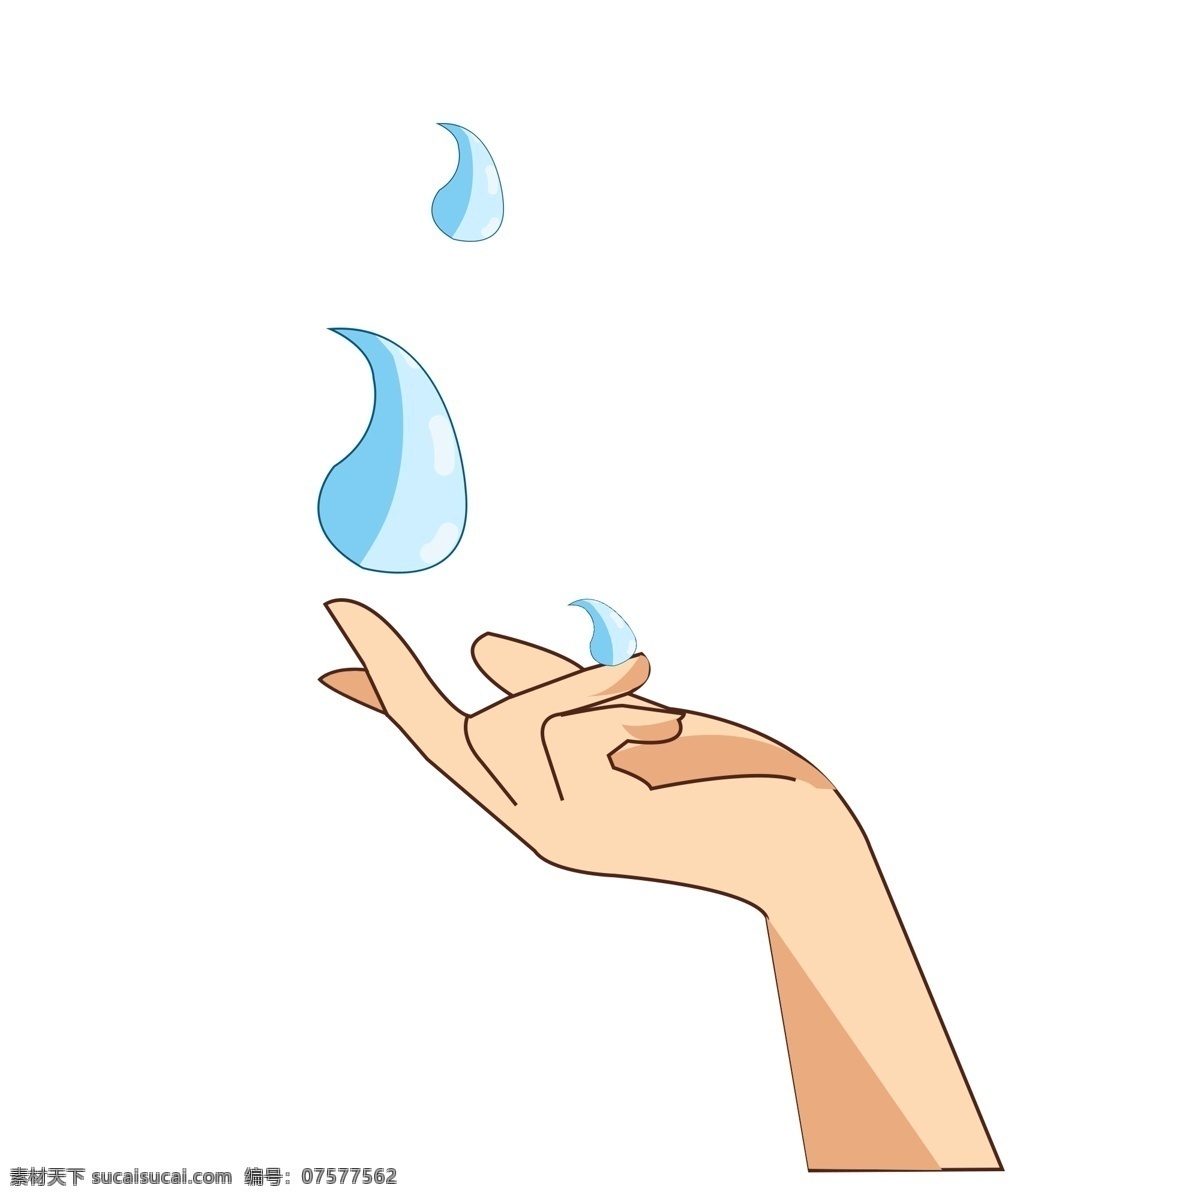 施 魔法 手势 装饰 插画 召唤水的手势 使用魔法手势 有趣的手势 儿童游戏手势 蓝色的水滴 创意手势插画